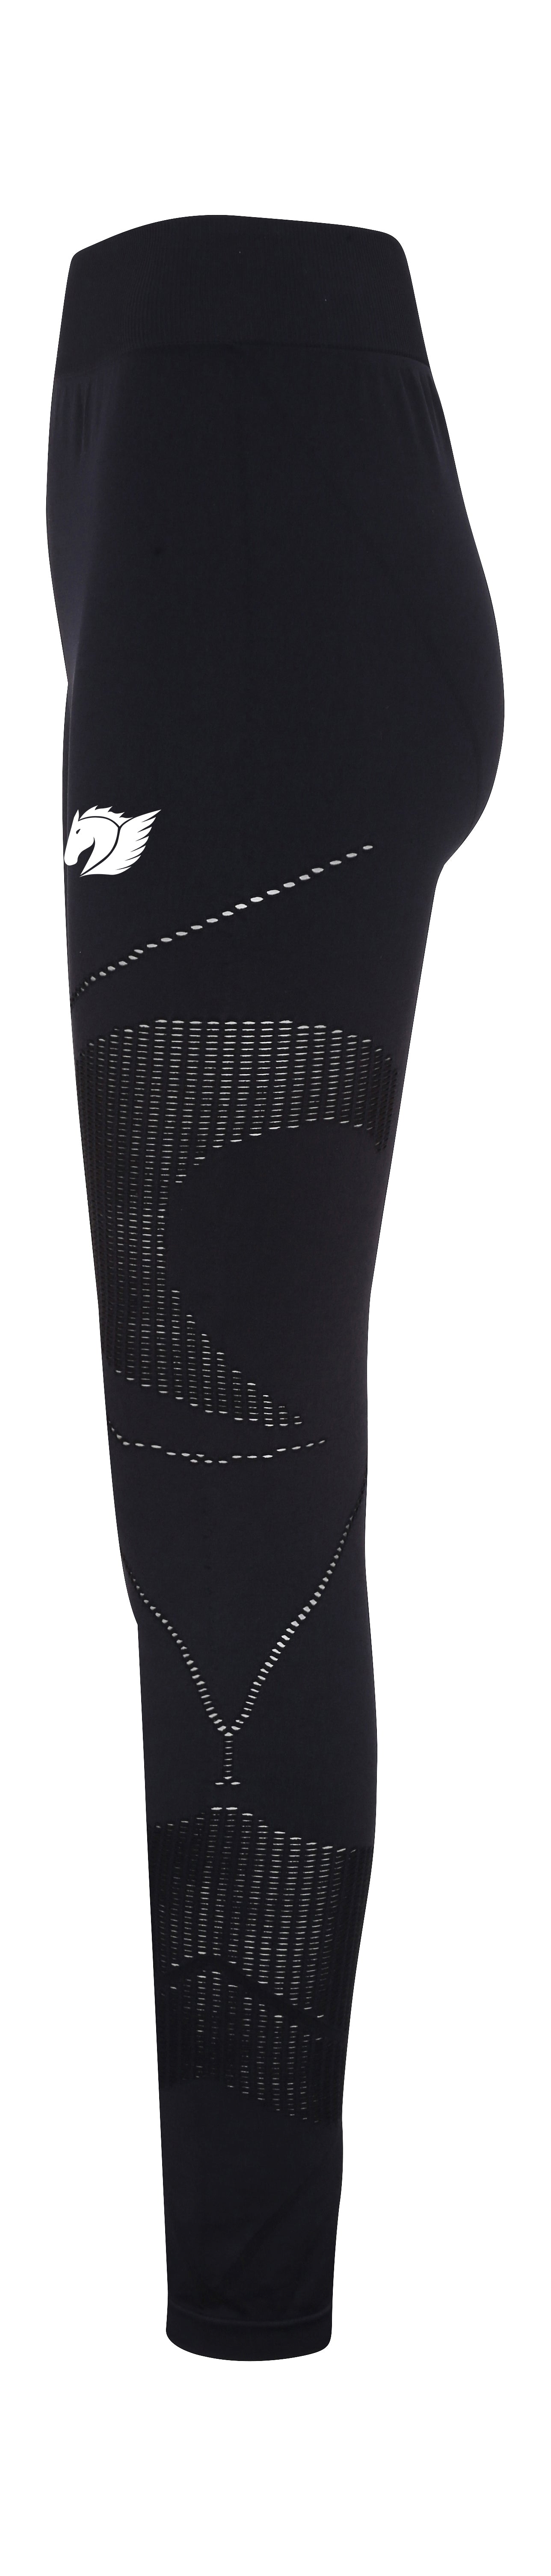 3D Multi-Sport Reveal Leggings - Black